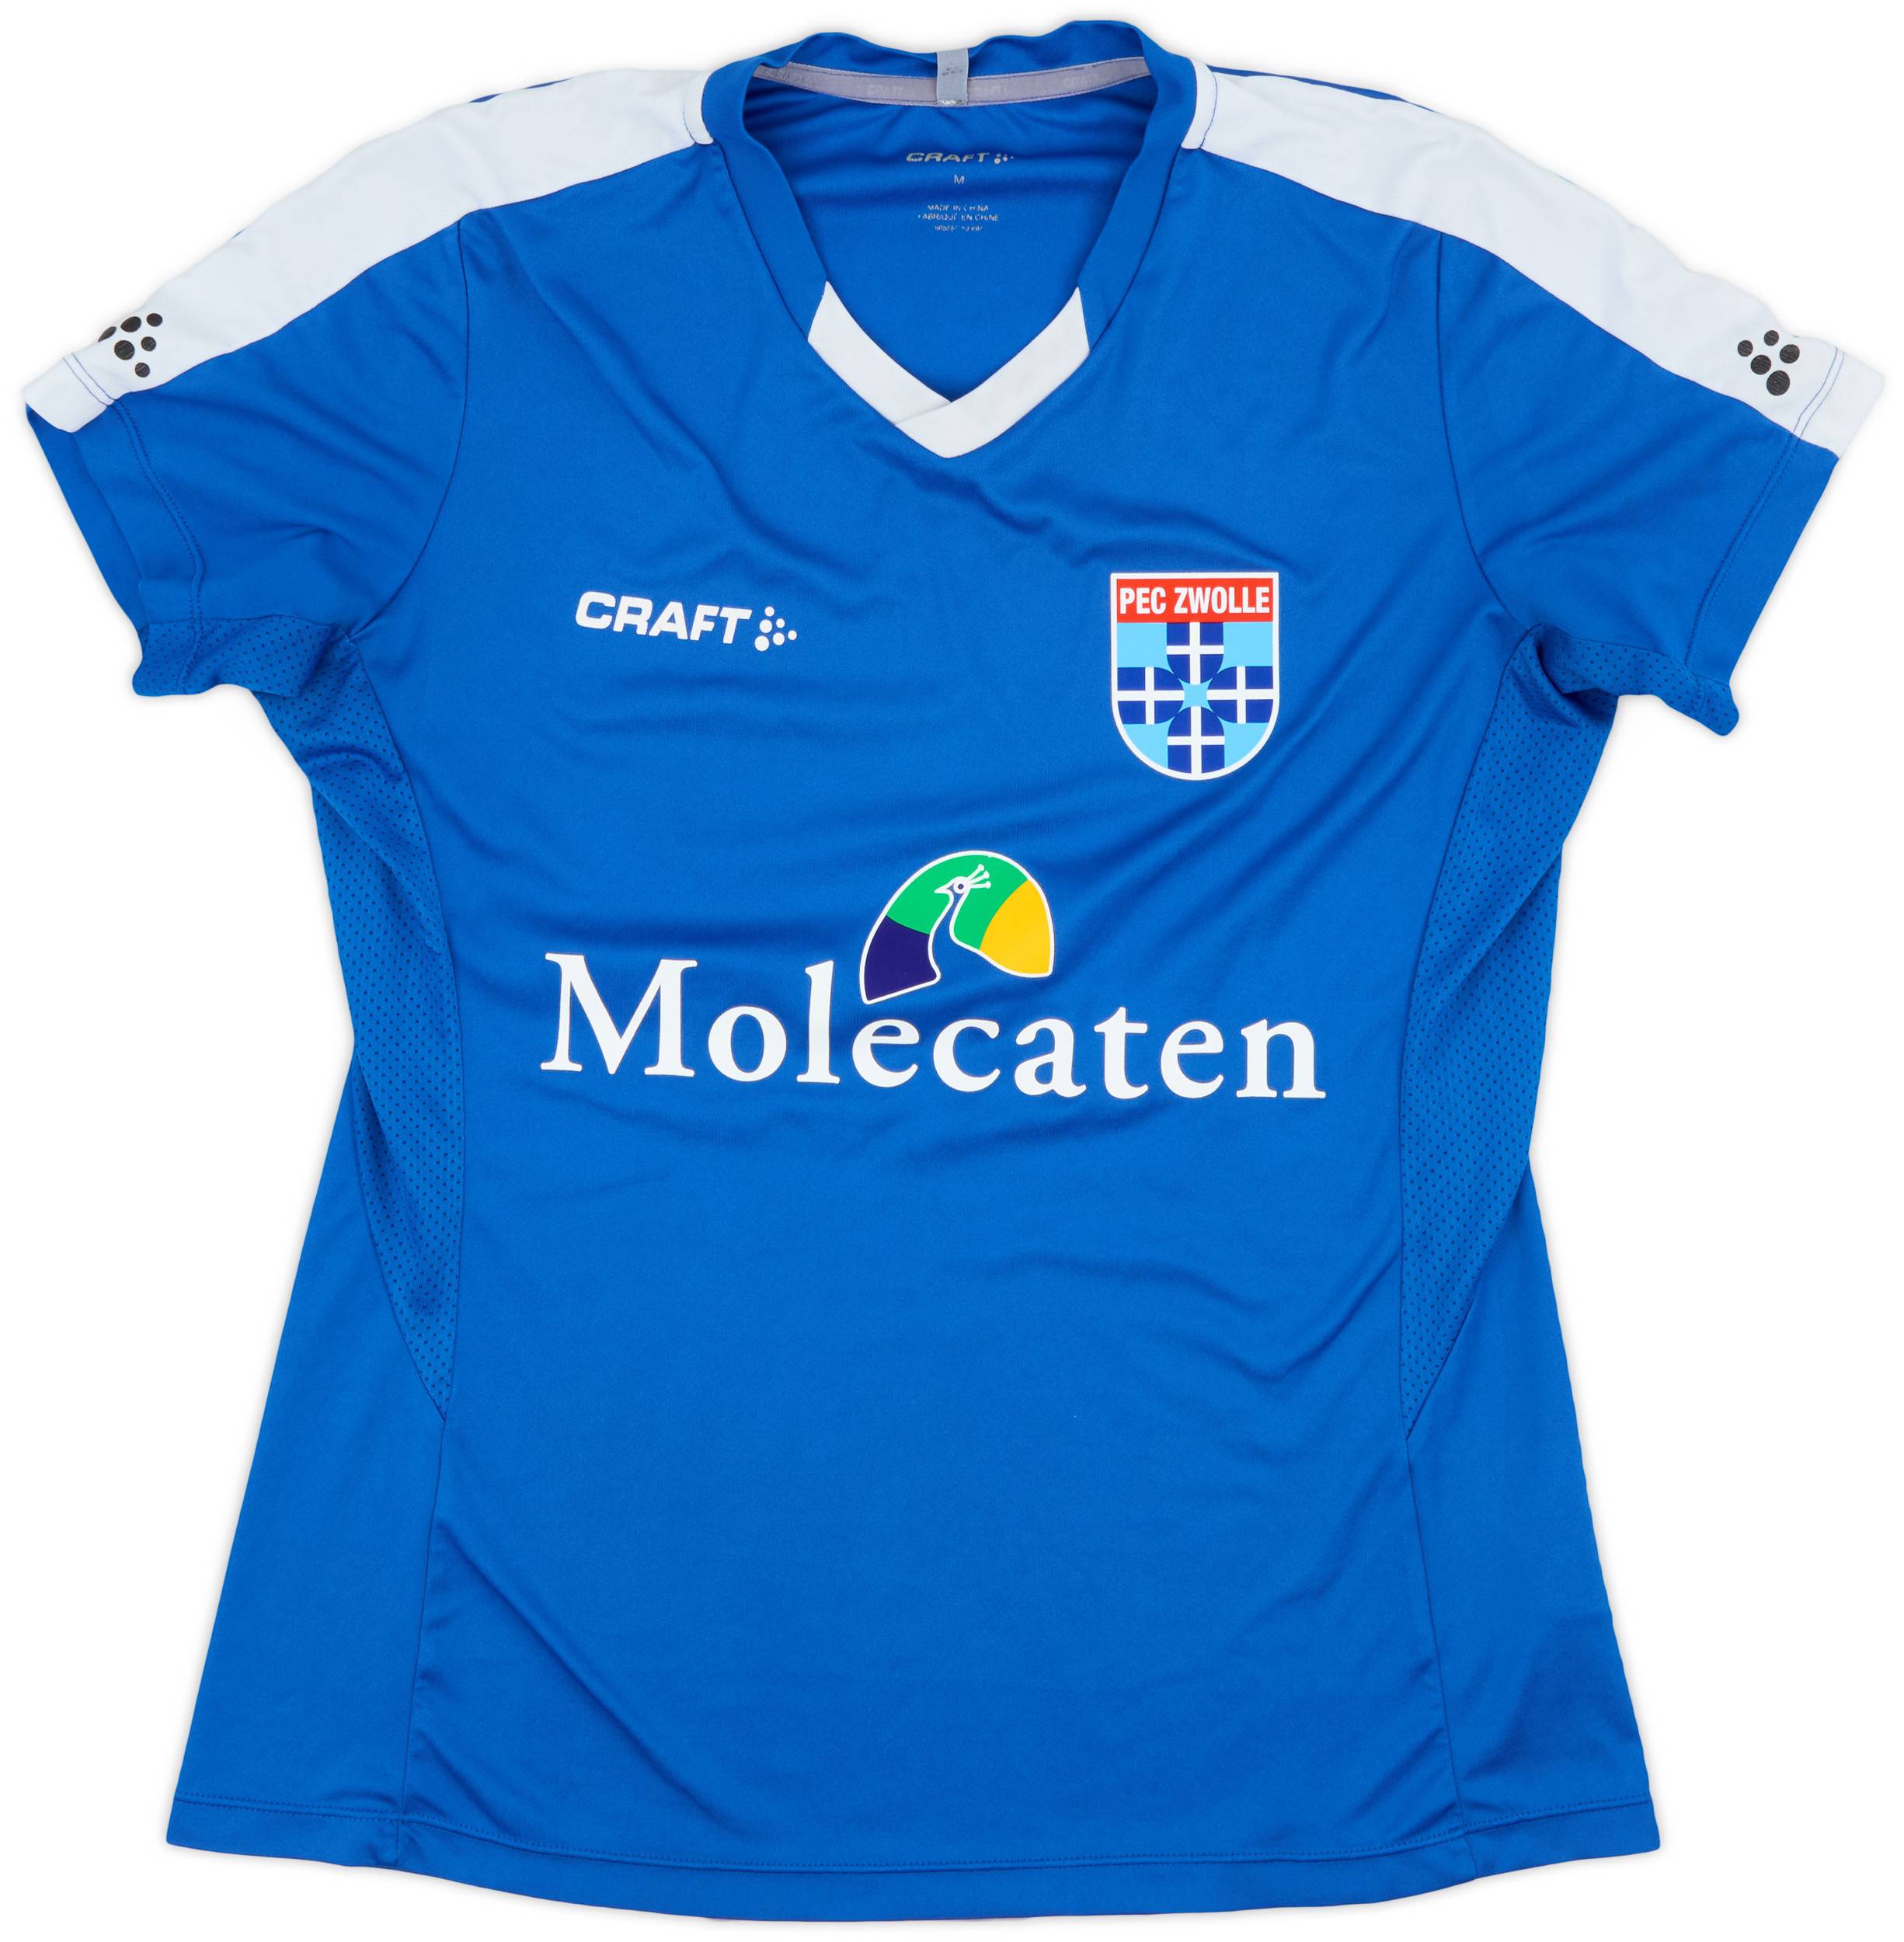 2019-20 PEC Zwolle Craft Training Shirt - 8/10 - (Women's M)